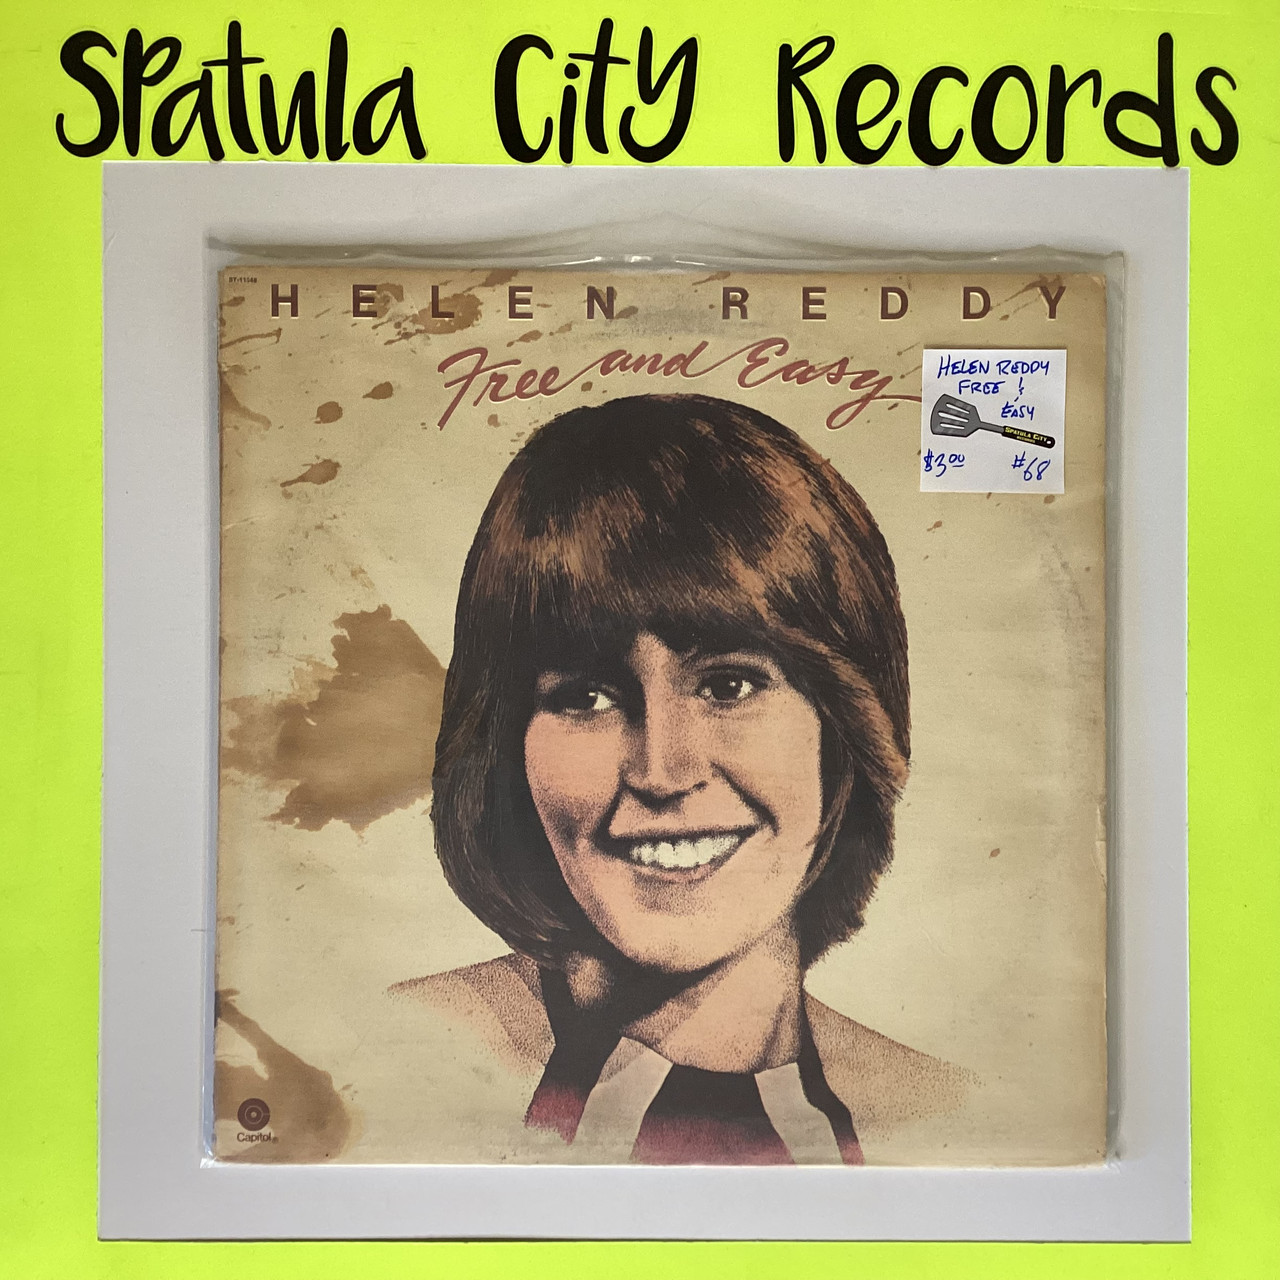 Helen Reddy - Free and Easy - vinyl record album LP